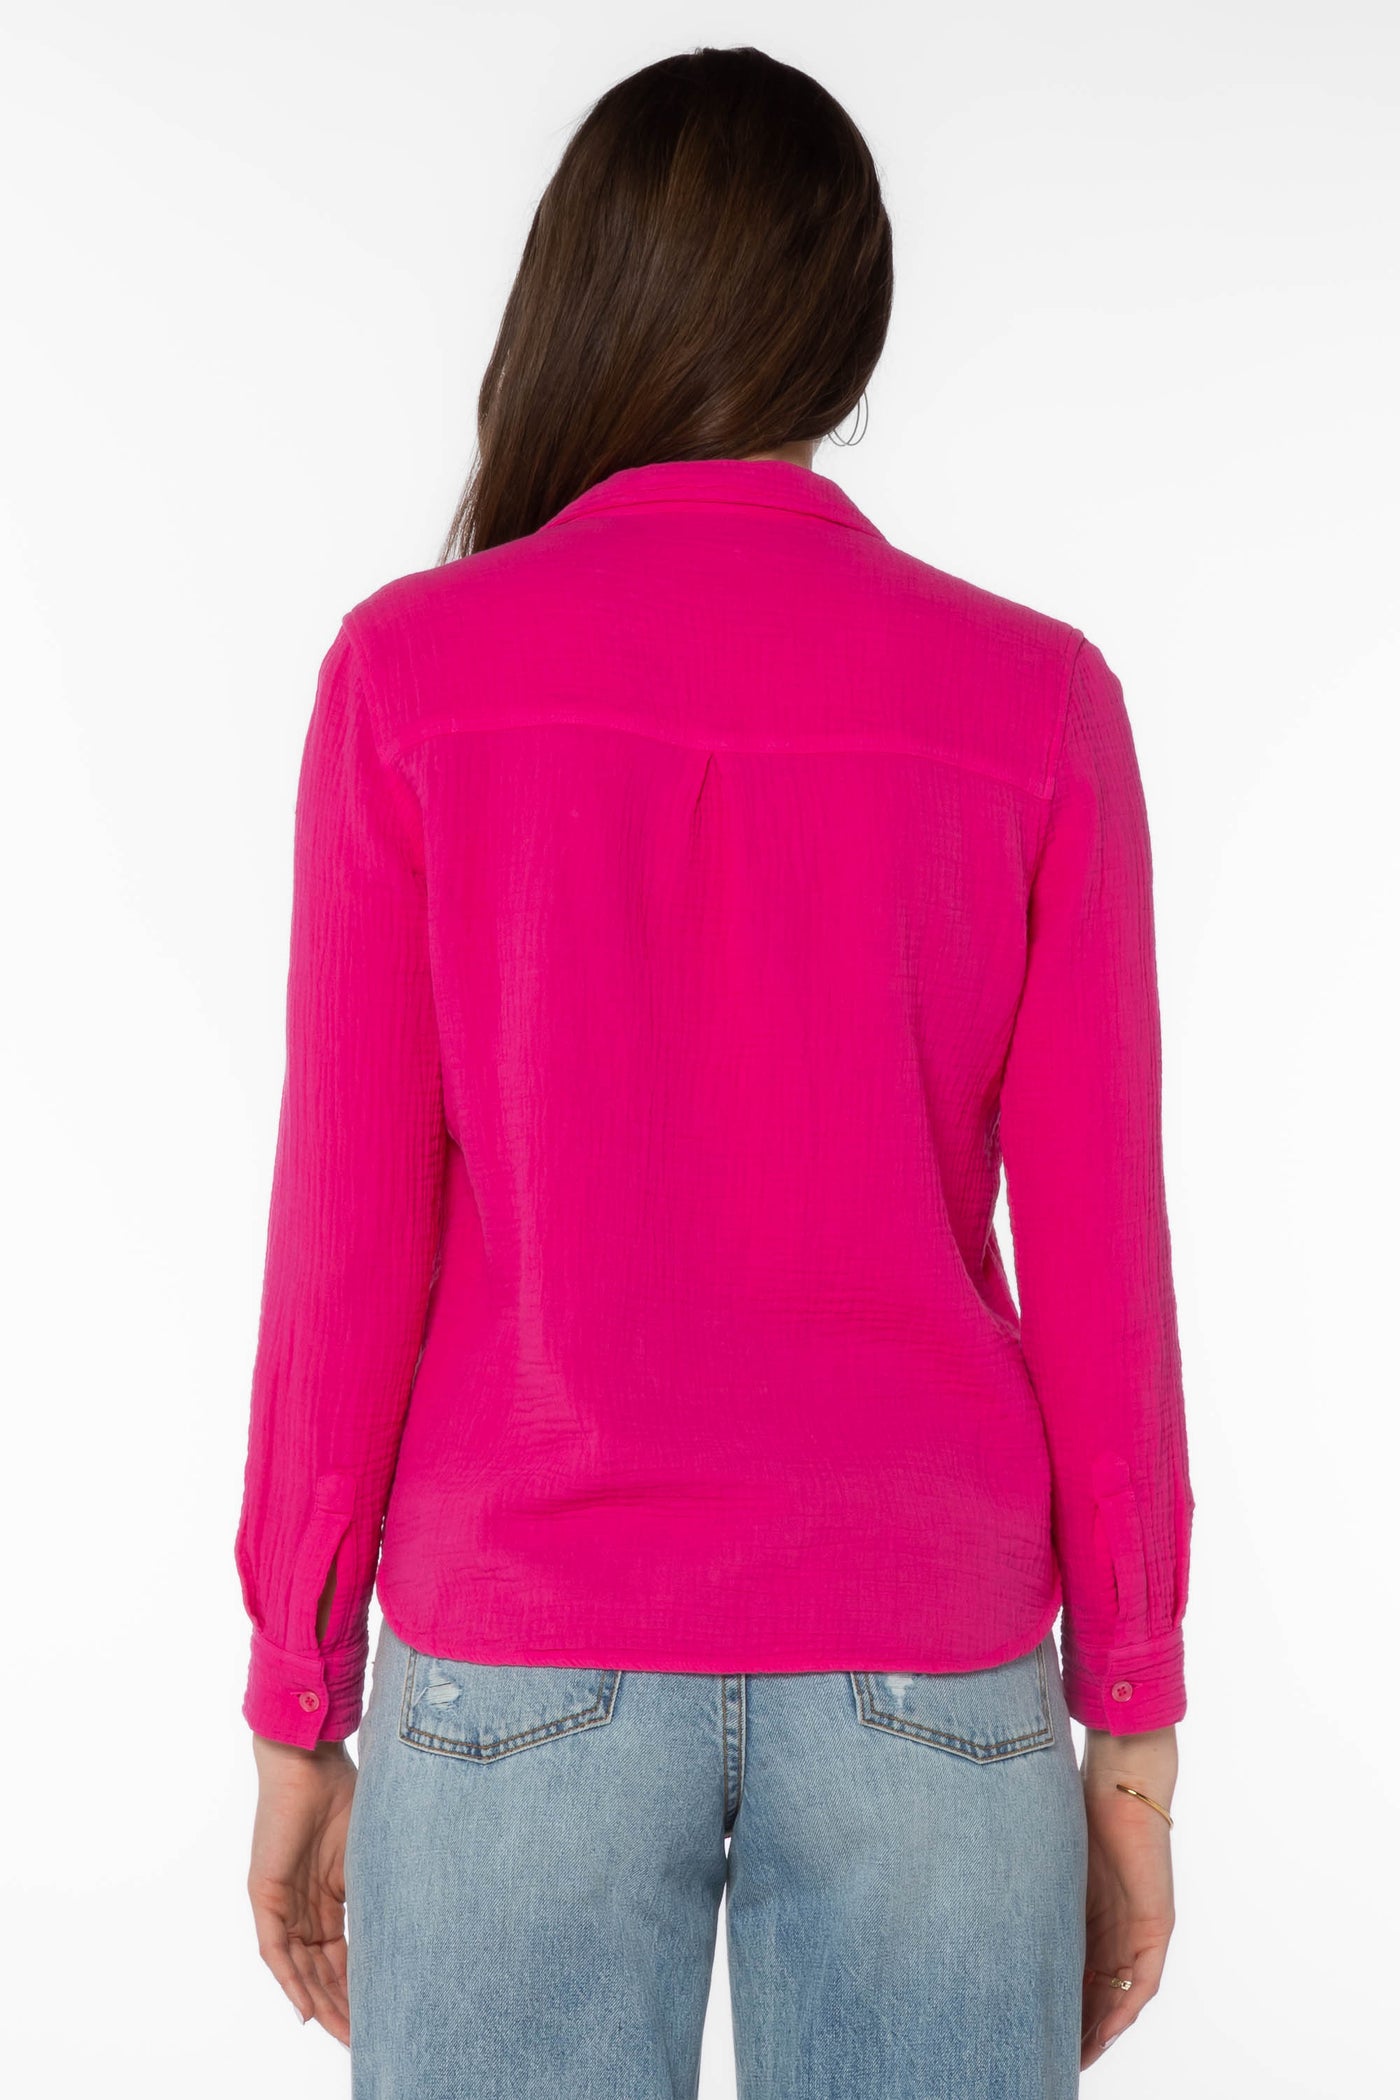 Bennett Pink Shirt - Tops - Velvet Heart Clothing